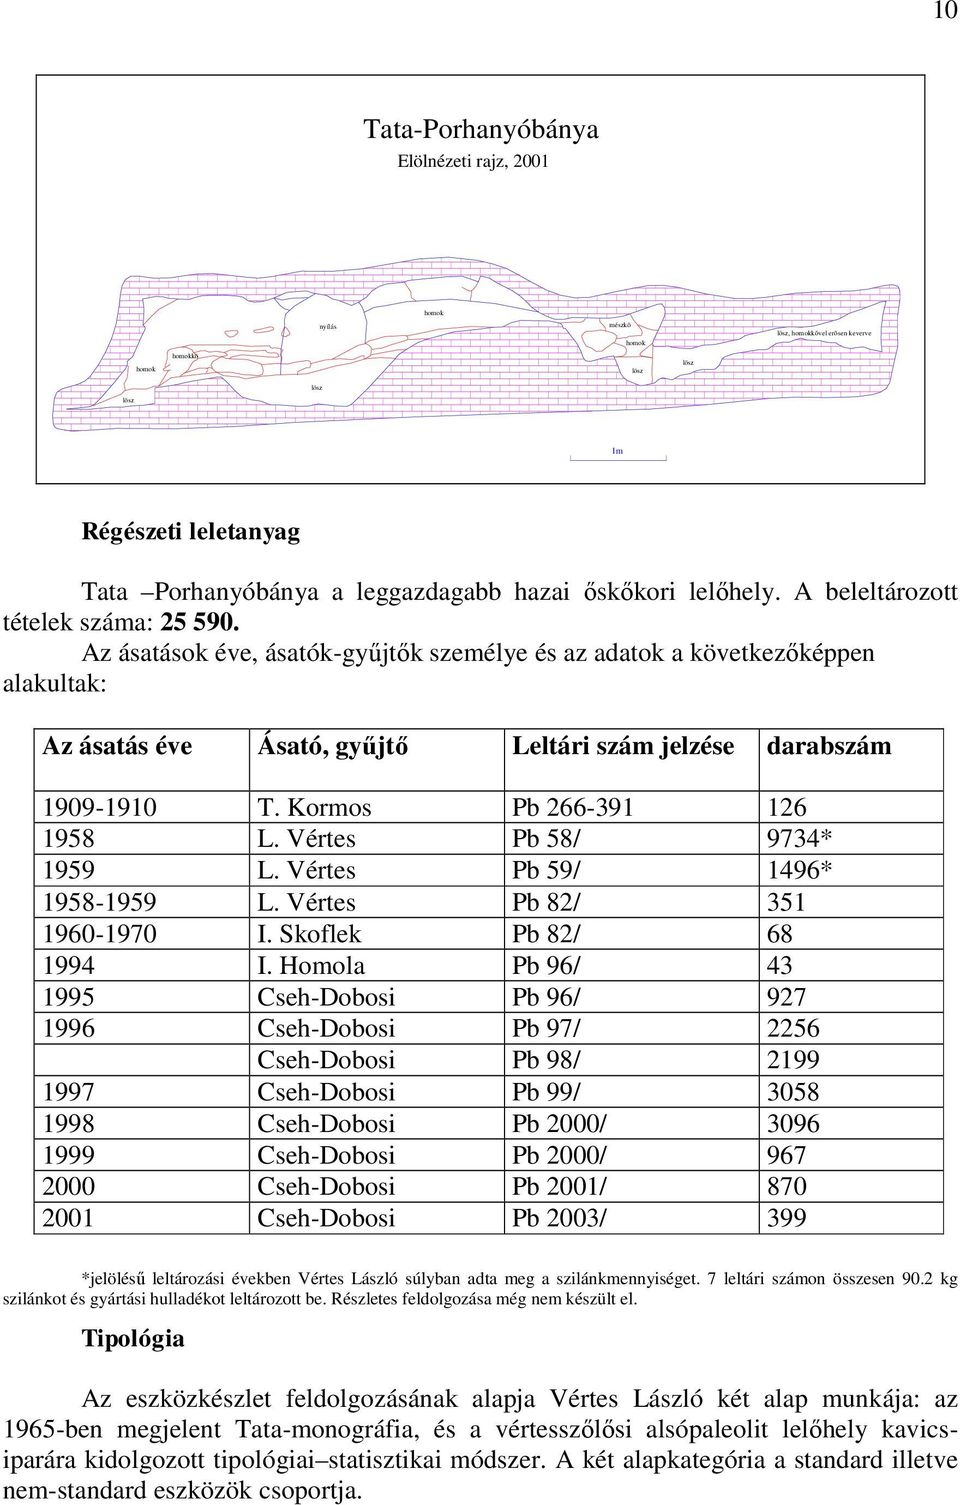 Az ásatások éve, ásatók-gyűjtők személye és az adatok a következőképpen alakultak: Az ásatás éve Ásató, gyűjtő Leltári szám jelzése darabszám 1909-1910 T. Kormos Pb 266-391 126 1958 L.